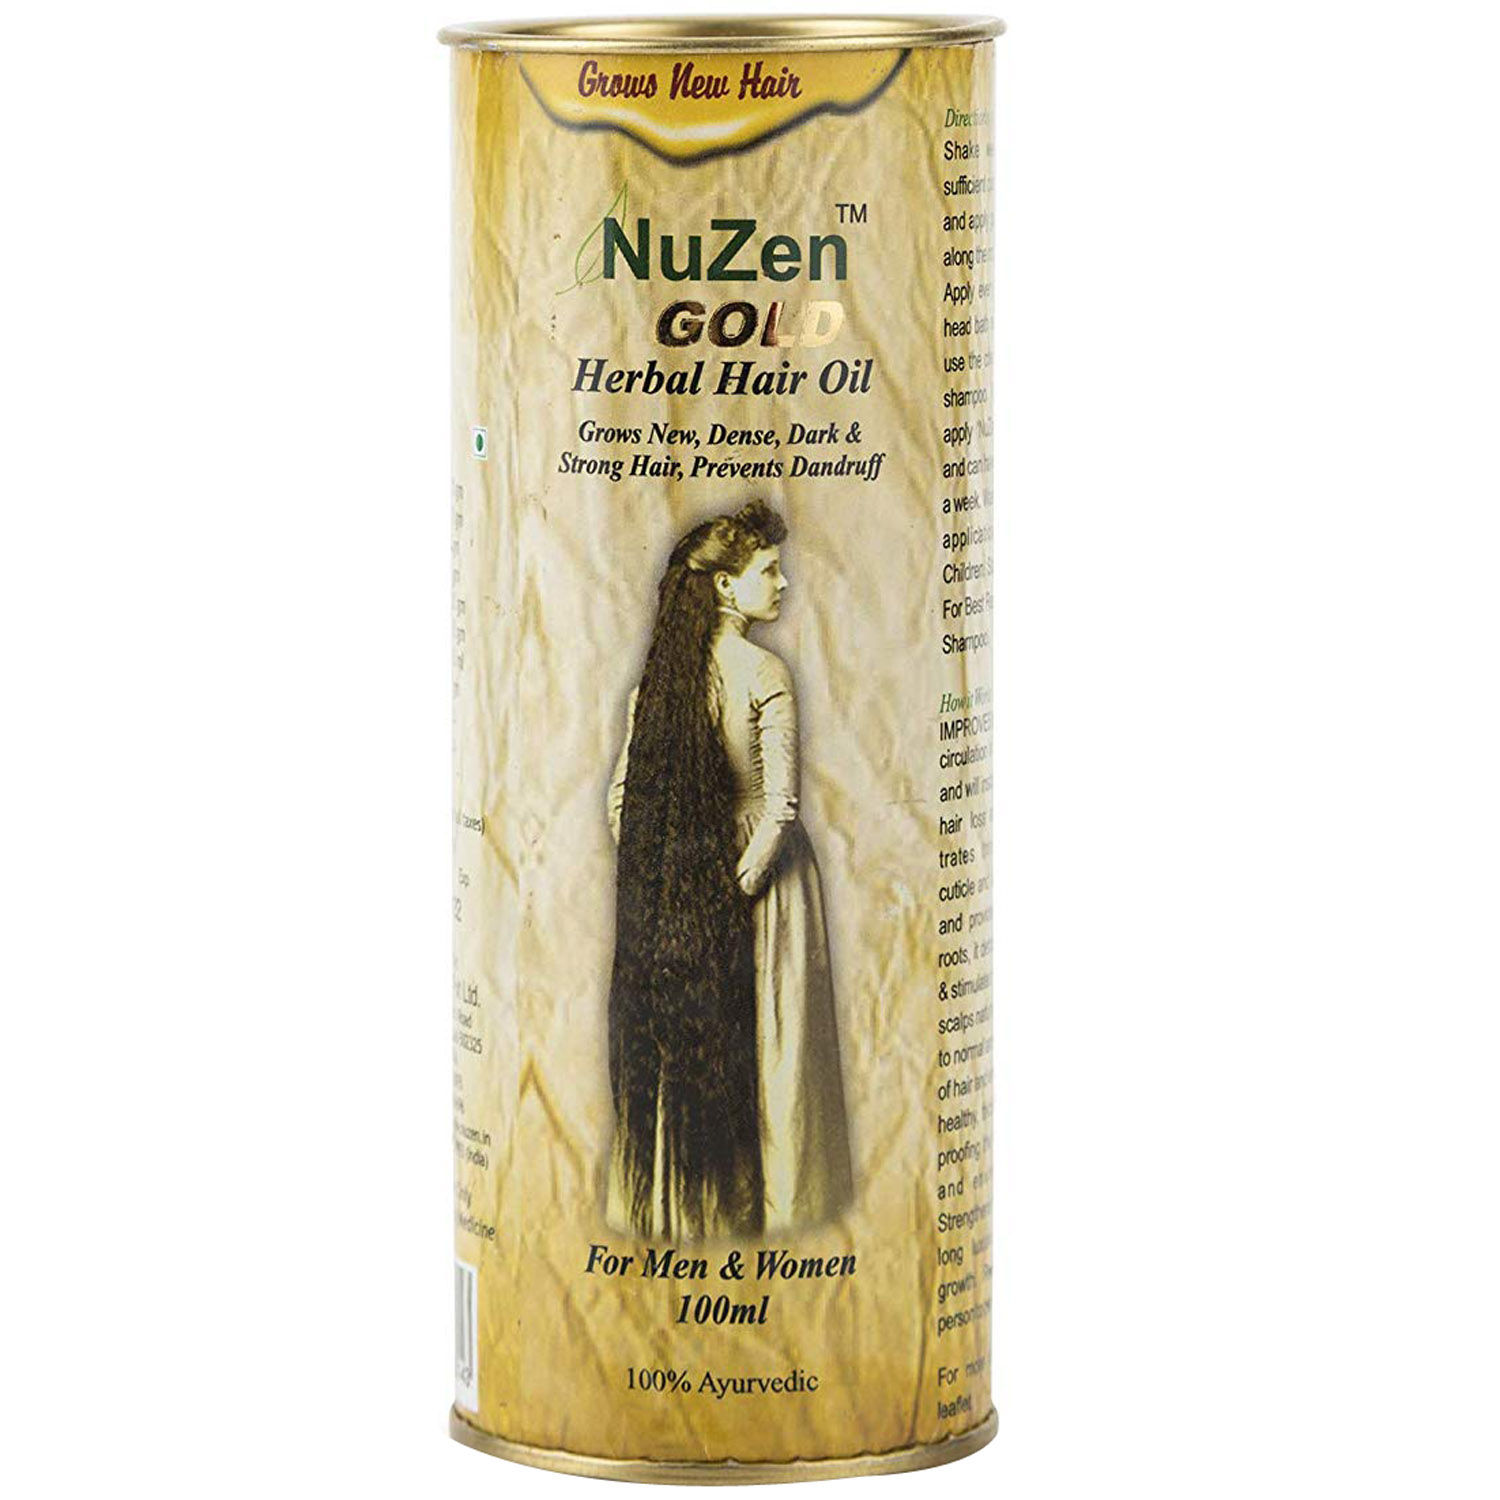 Buy Nuzen Gold Herbal Hair Oil, 100 ml Online